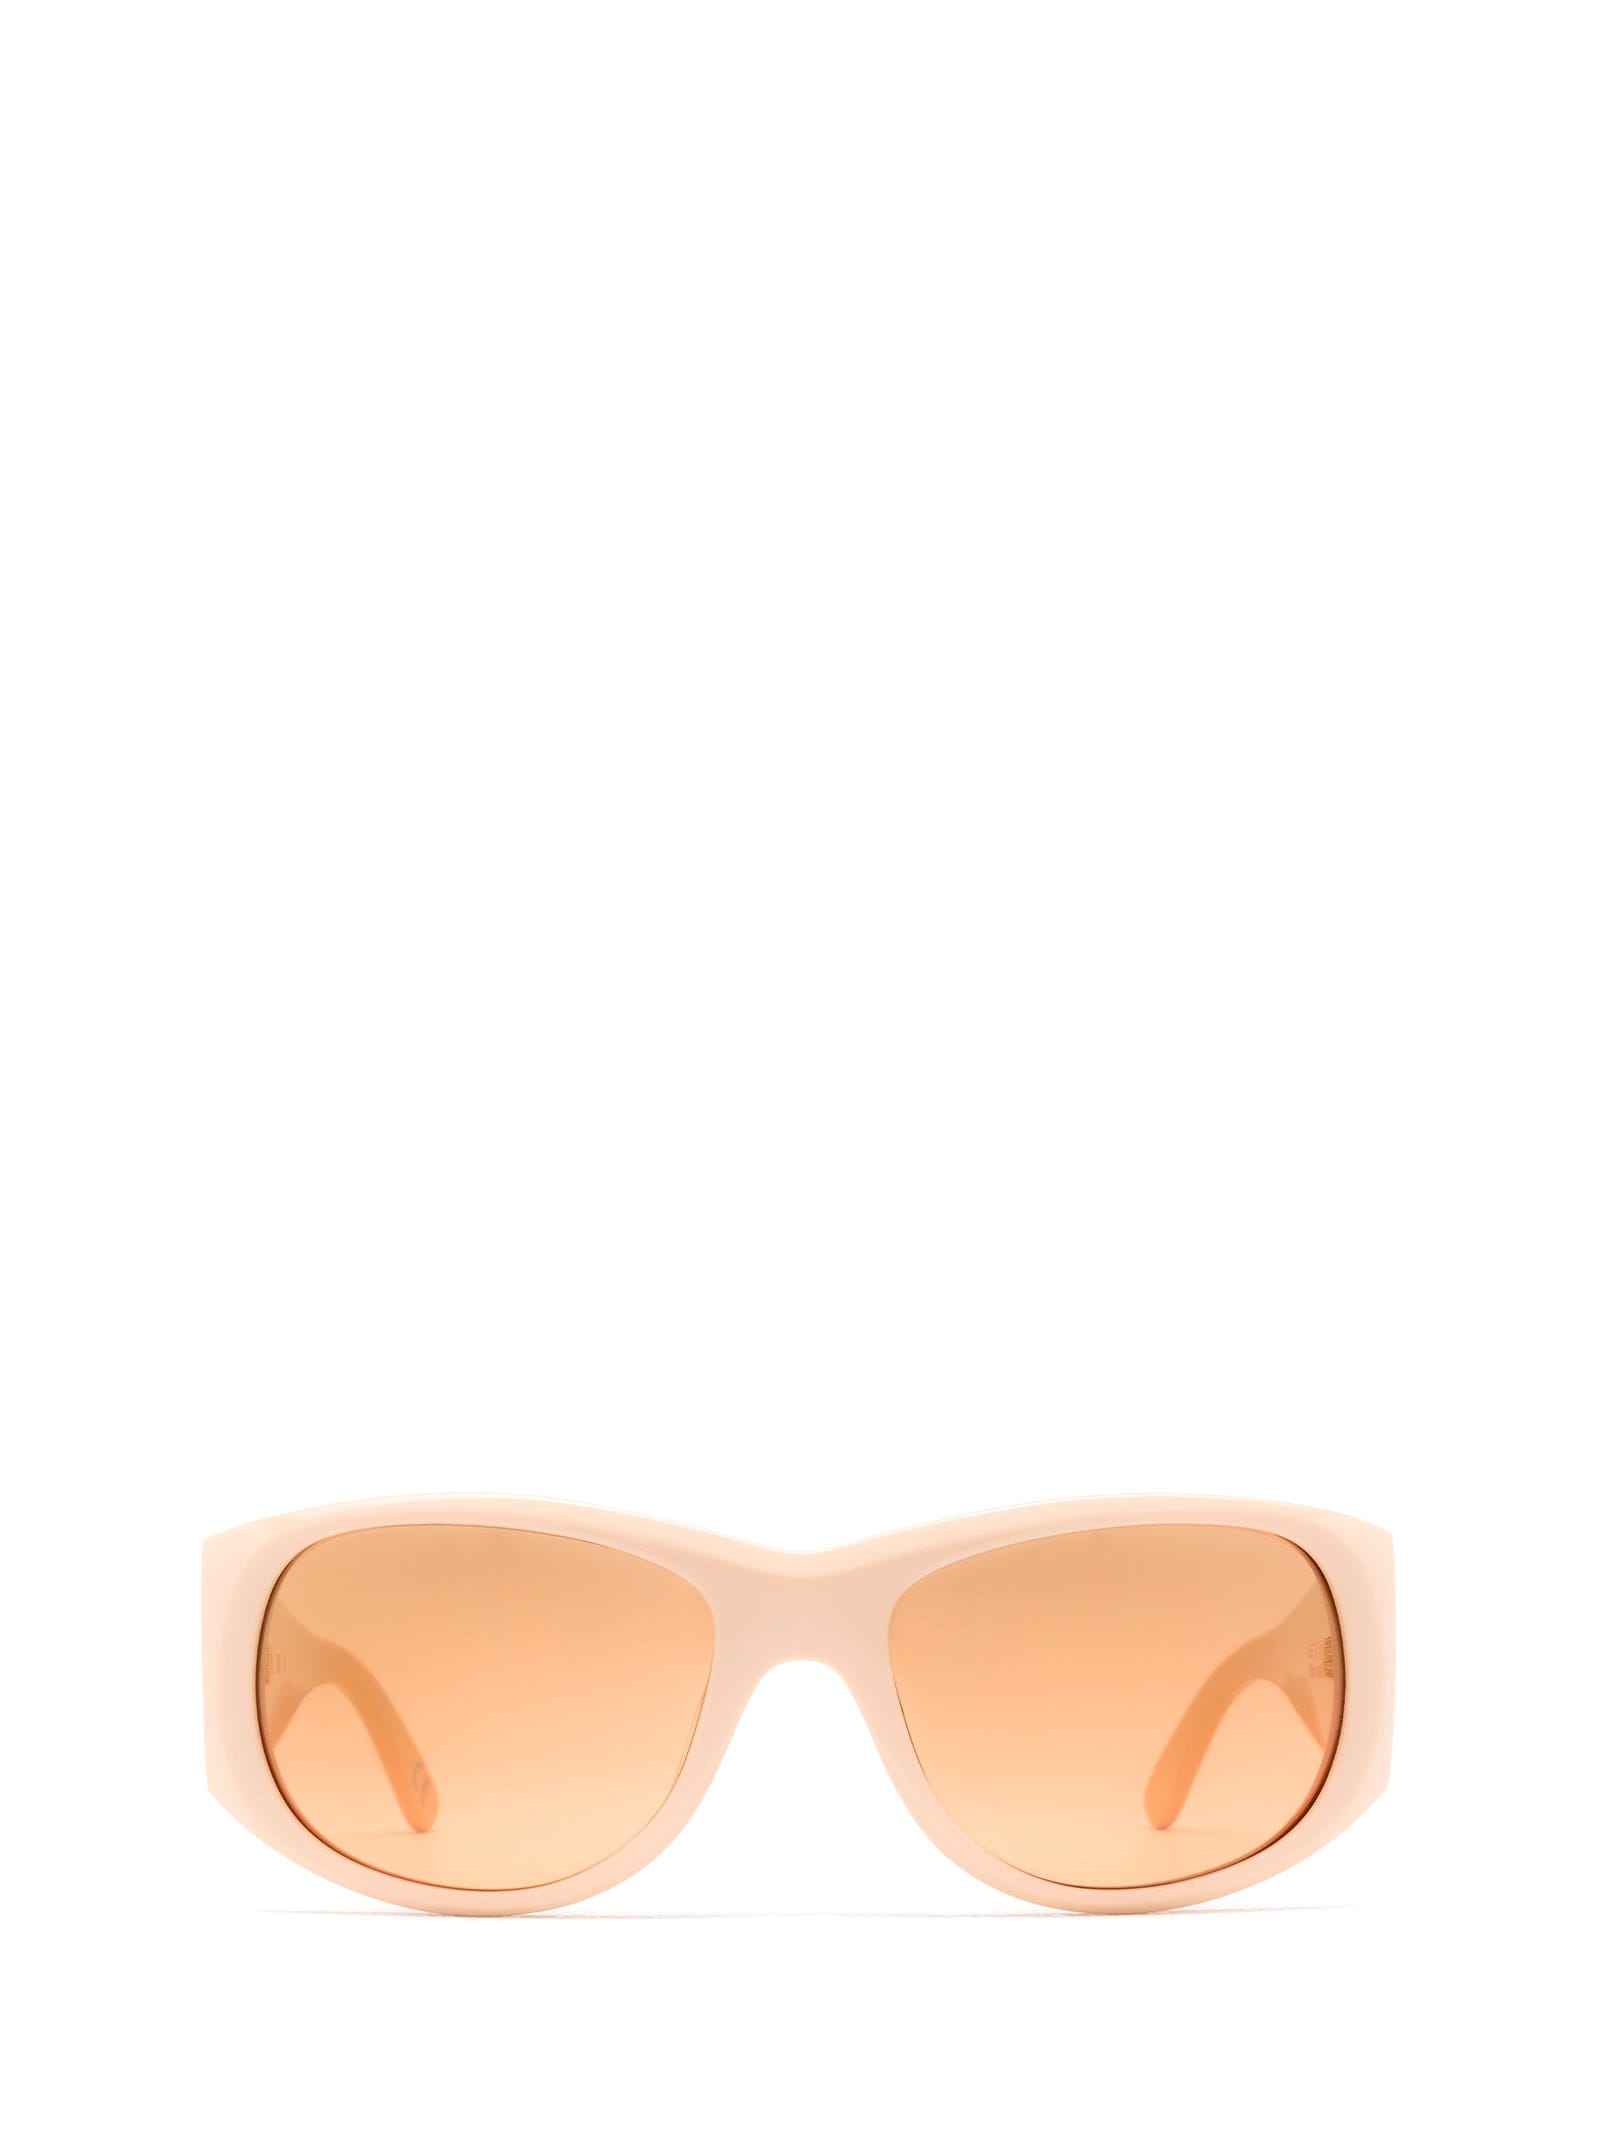 Marni Eyewear Orinoco River Nude Sunglasses